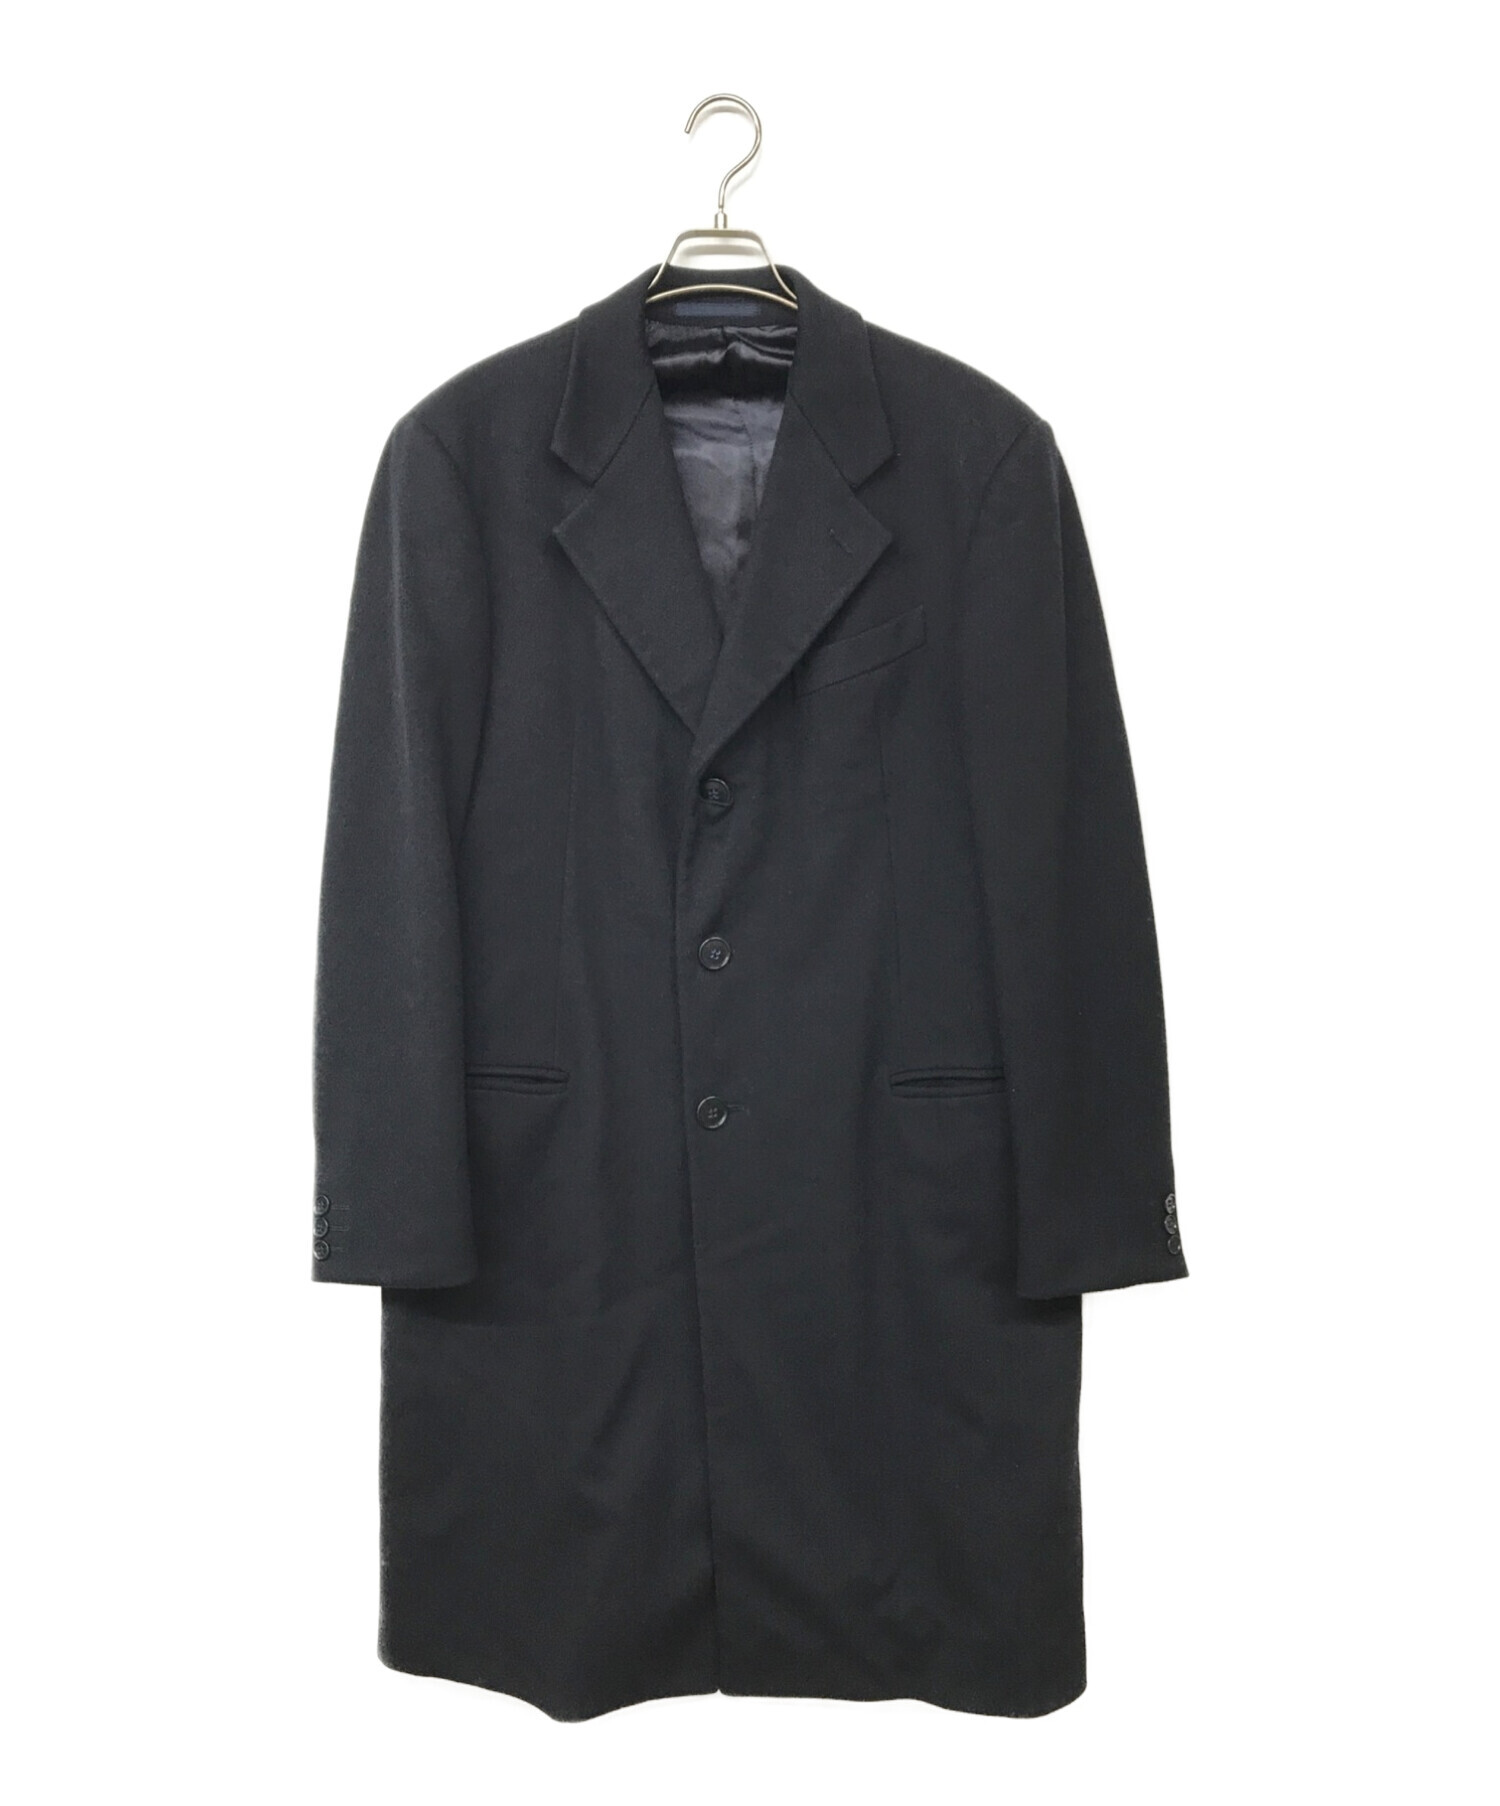 素材表地アルマーニ コレッツォーニ ARMANI COLLEZIONI コート ベルト付き ロングコート ウール ハイネック アウター メンズ イタリア製 50(M相当) ブラック